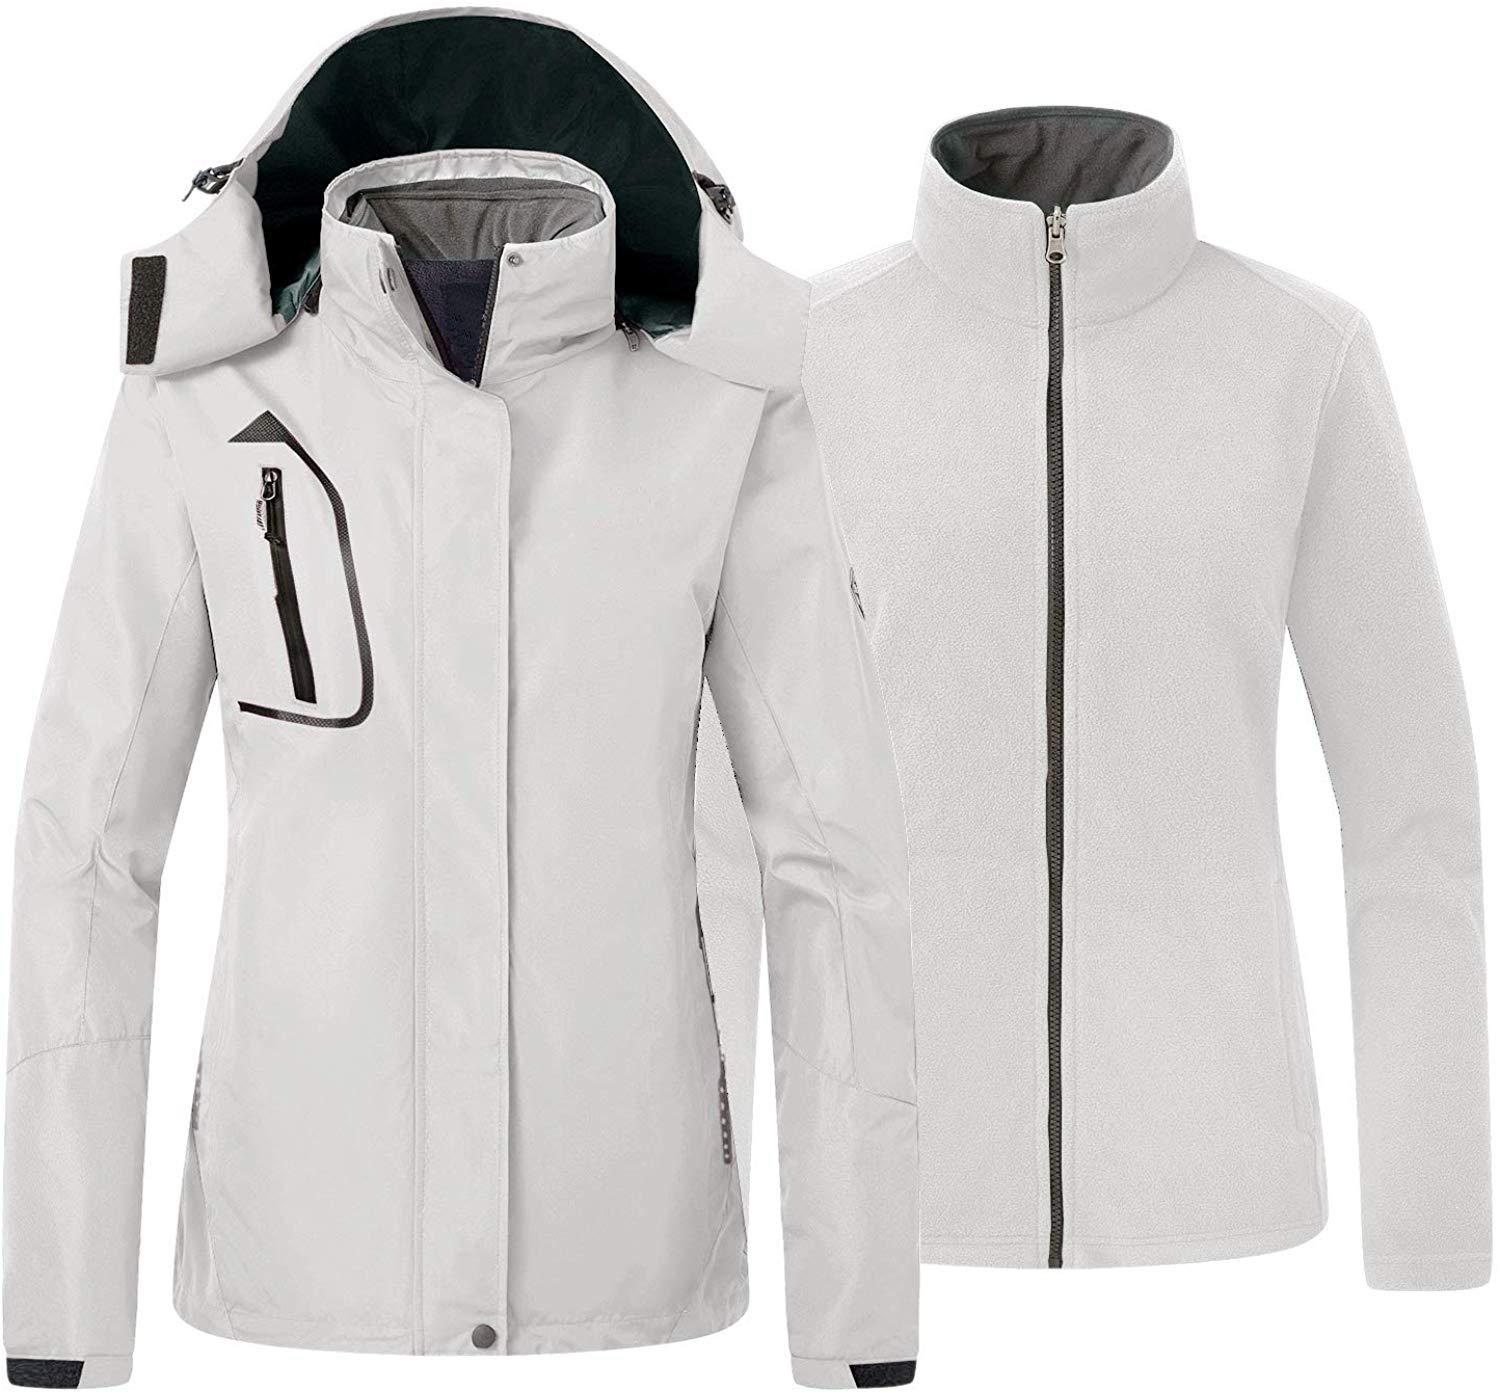 Women Outdoor Sport Clothing Winter Jacket Fleece Jacket